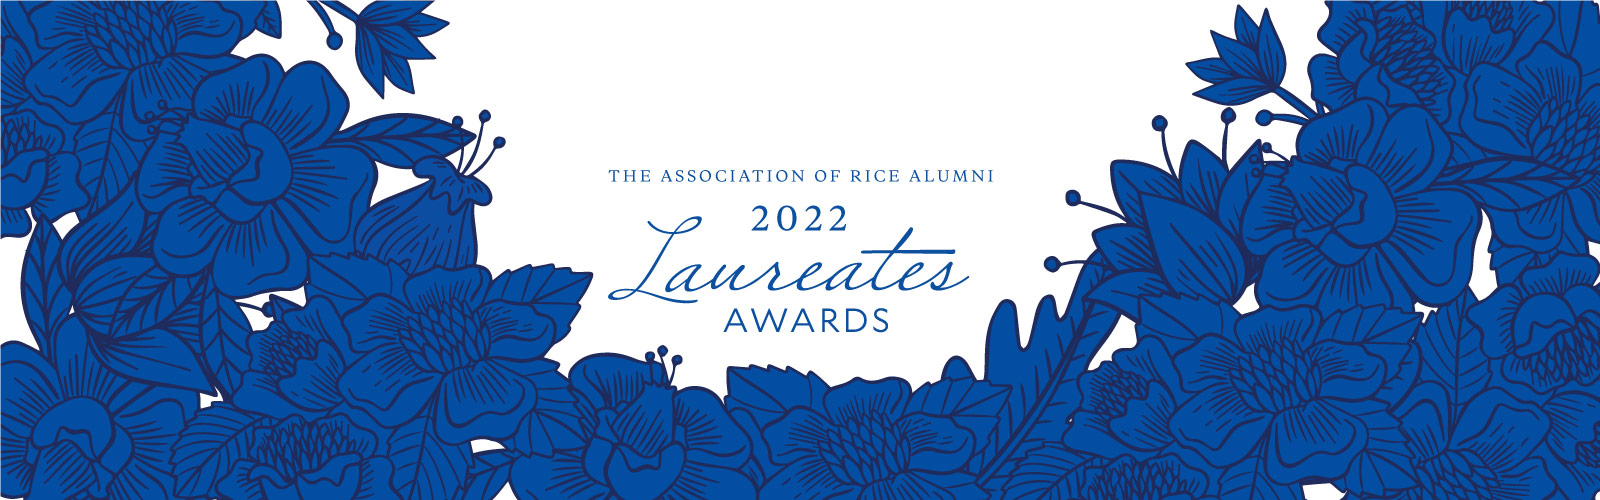 2022 Laureates Award Celebration